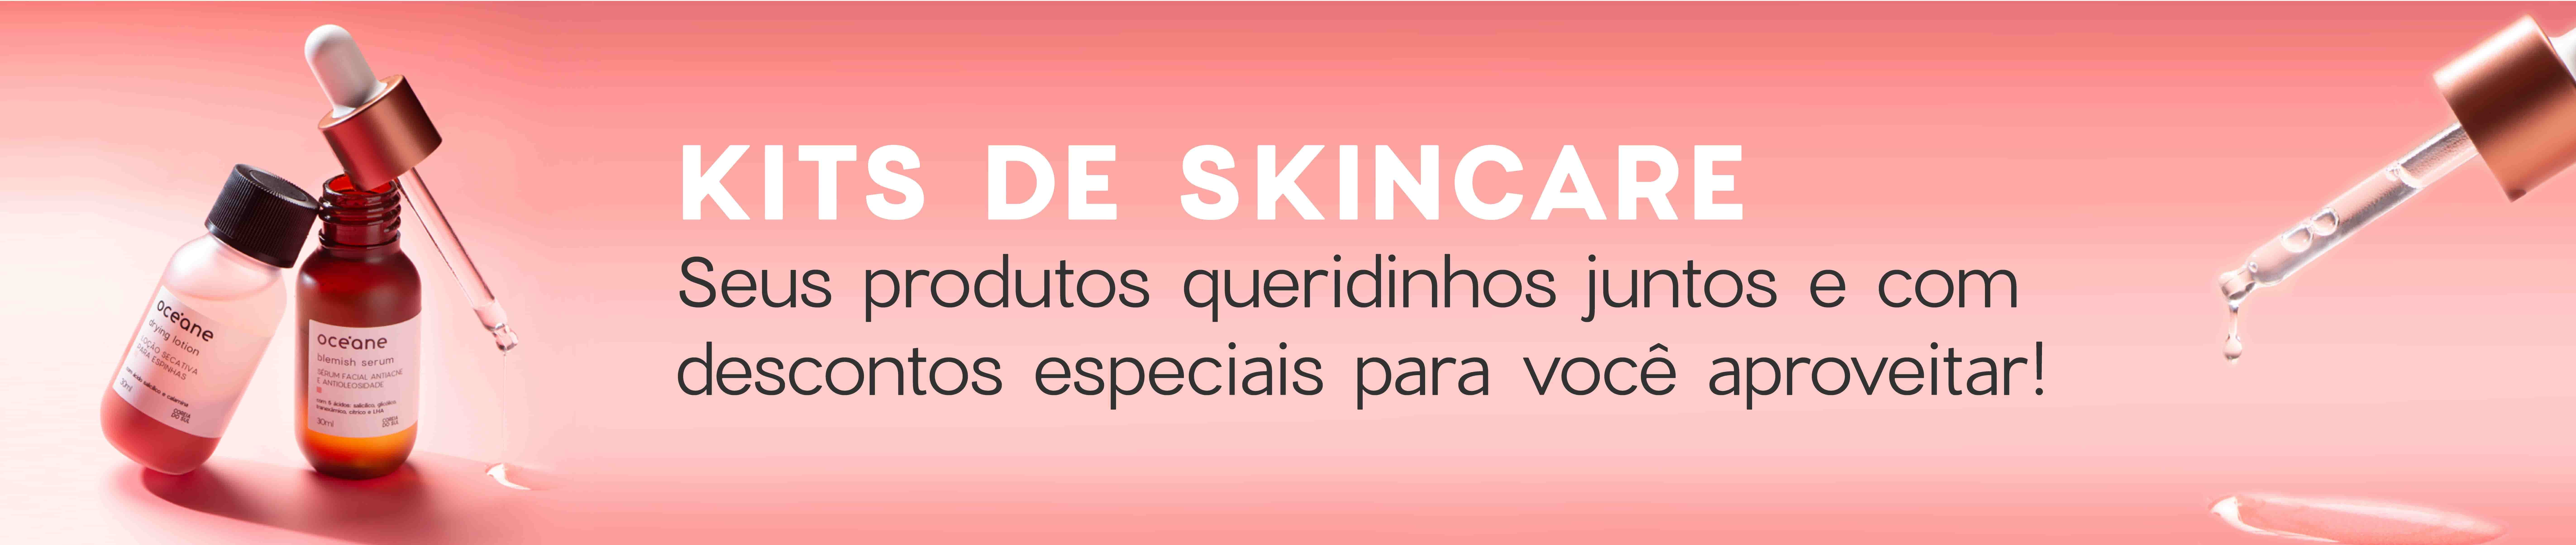 Kits de Skincare Océane, a imagem mostra o kit xô acne, que conta com uma loçõ secativa de espinhas drying lotion e um sérum facial antiacne e antioleosidade blemish serum